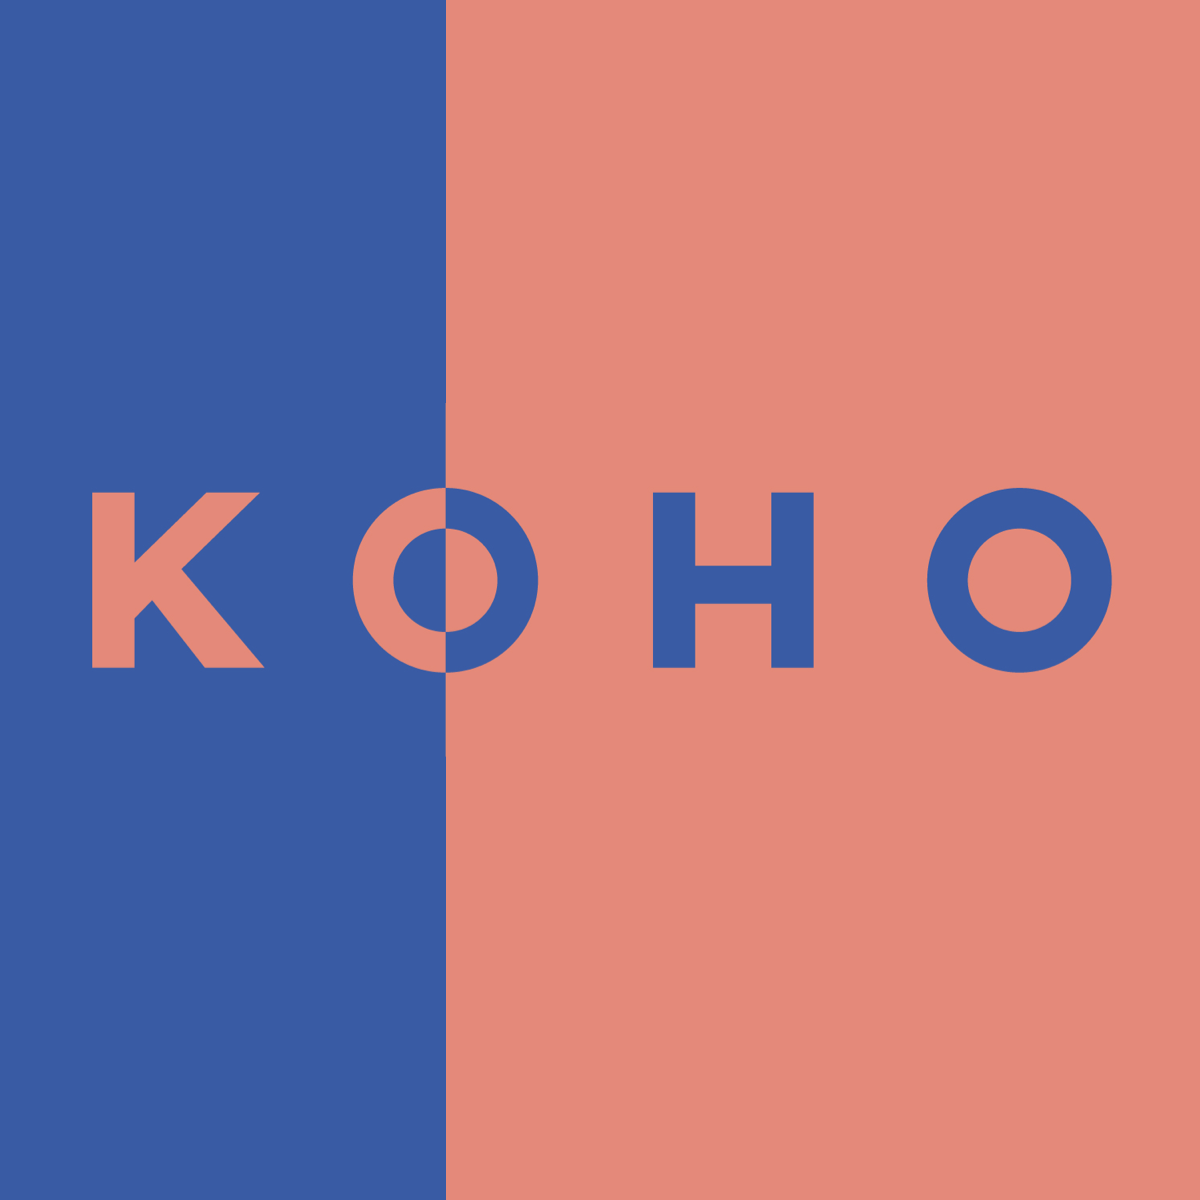 Koho Reloadable Prepaid Mastercard